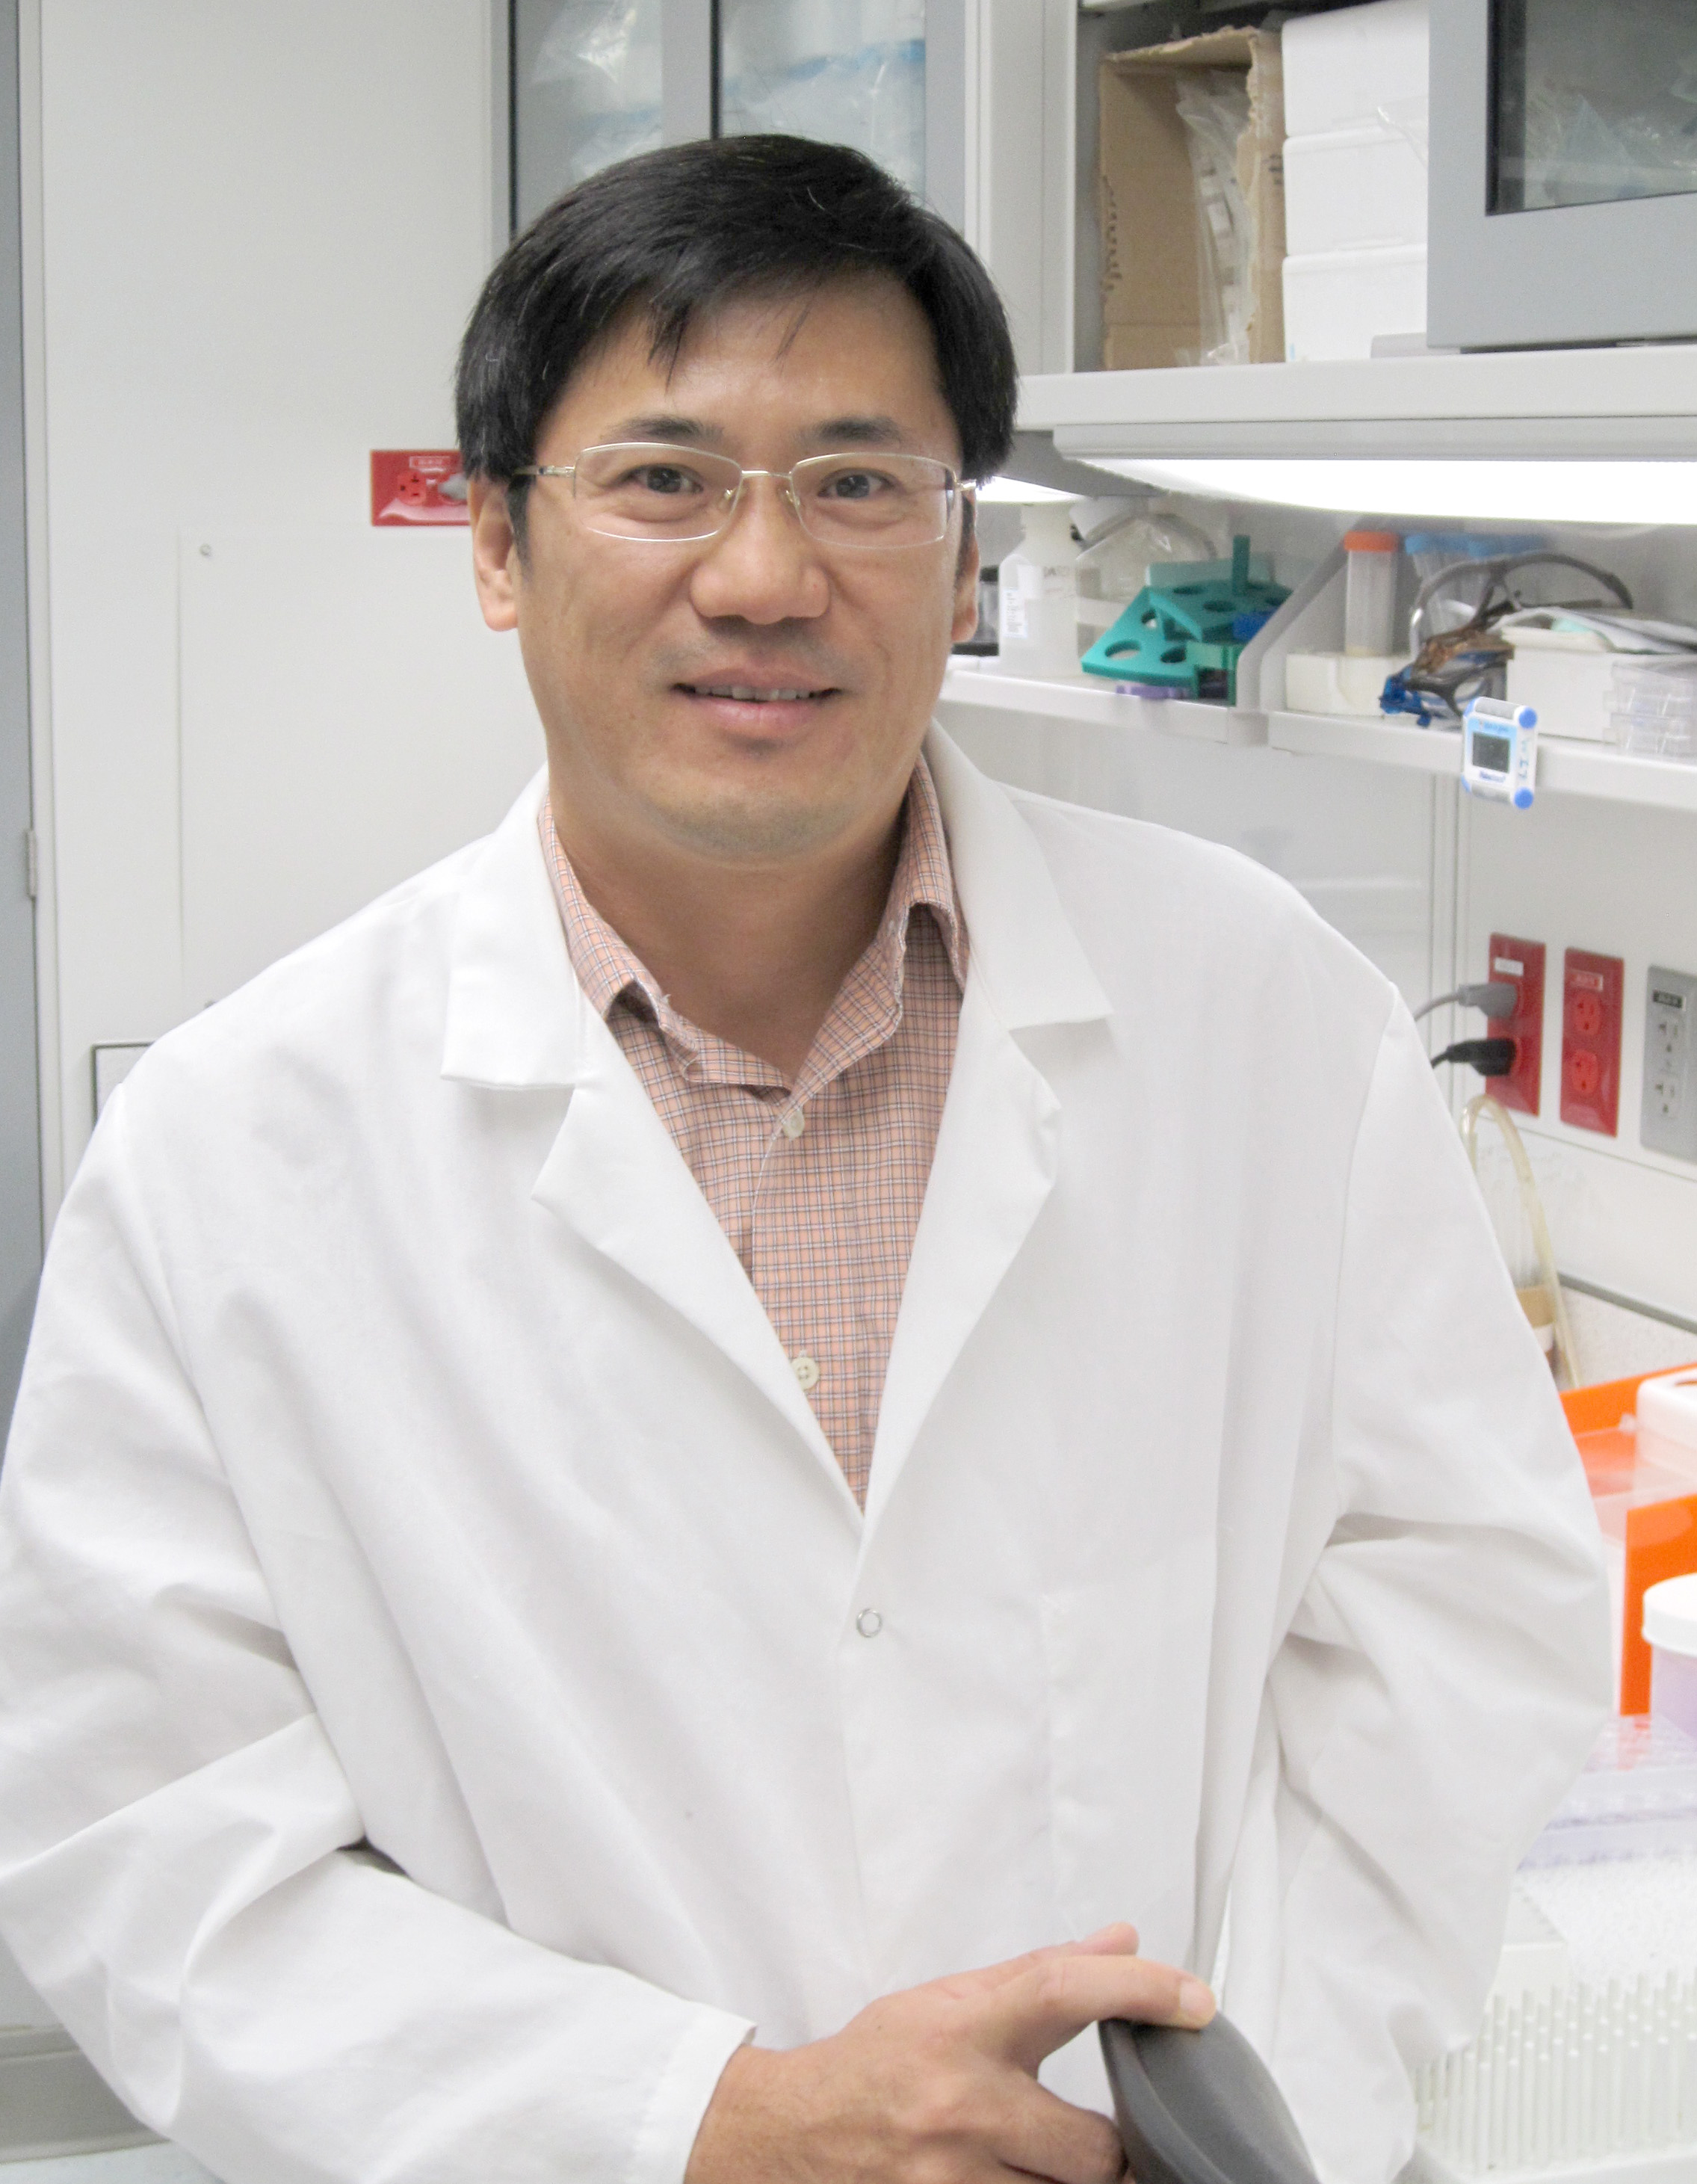 Ssang-Taek Steve Lim, Ph.D